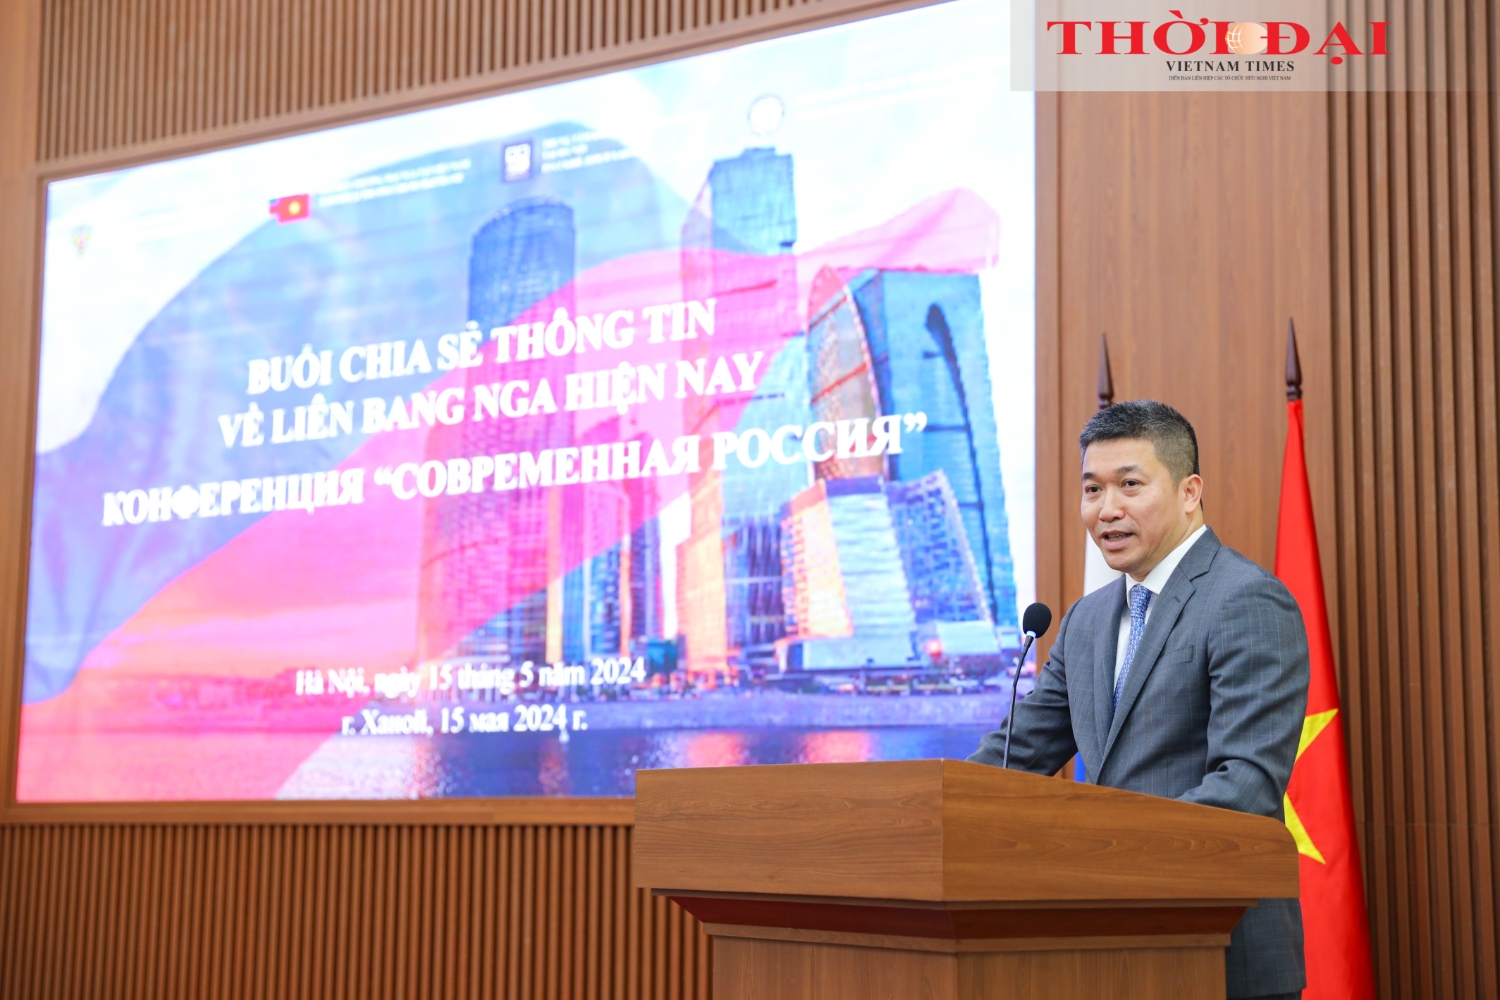 Chủ tịch Liên hiệp các tổ chức hữu nghị Việt Nam Phan Anh Sơn phát biểu tại buổi chia sẻ thông tin. (Ảnh: Đinh Hòa)